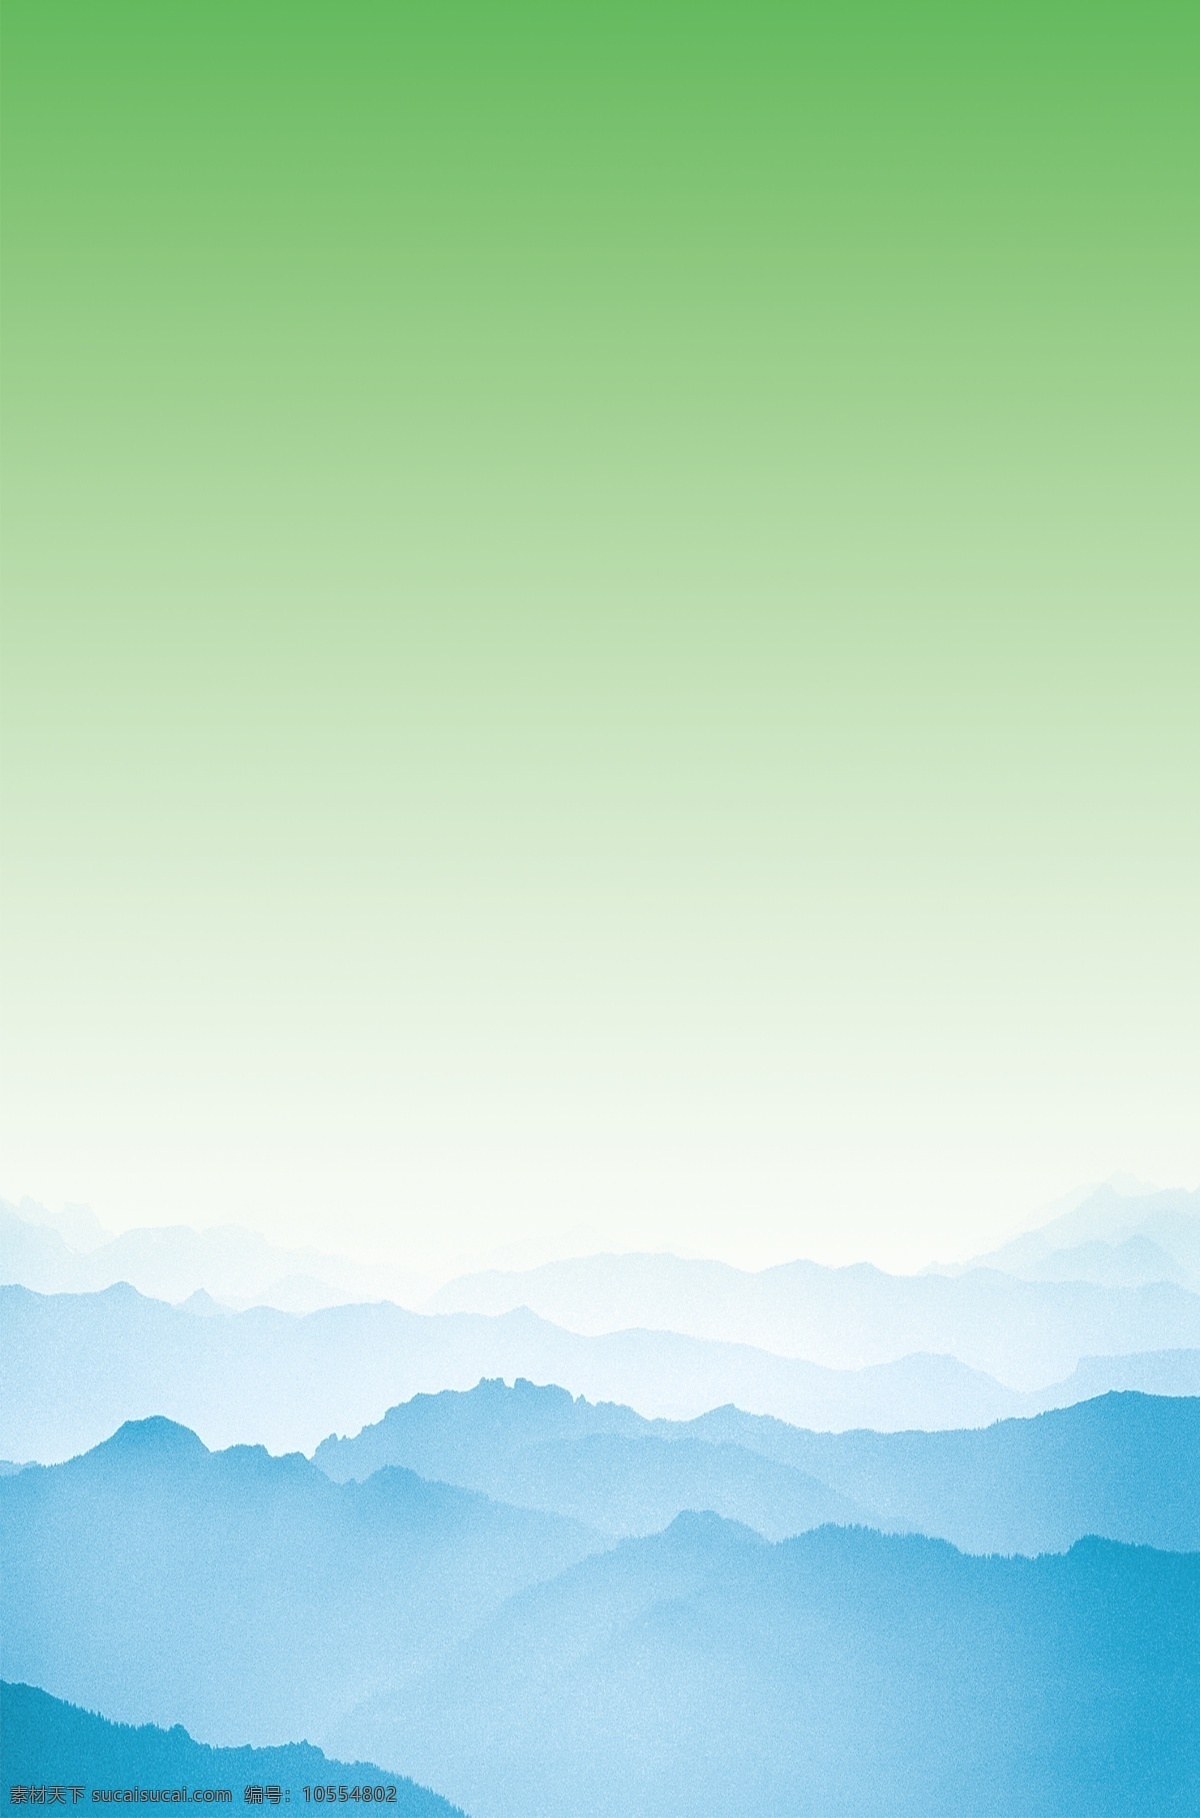 绿色 展板 背景 图 爱护环境 保护家园 爱护公共卫生 环保 山 分层